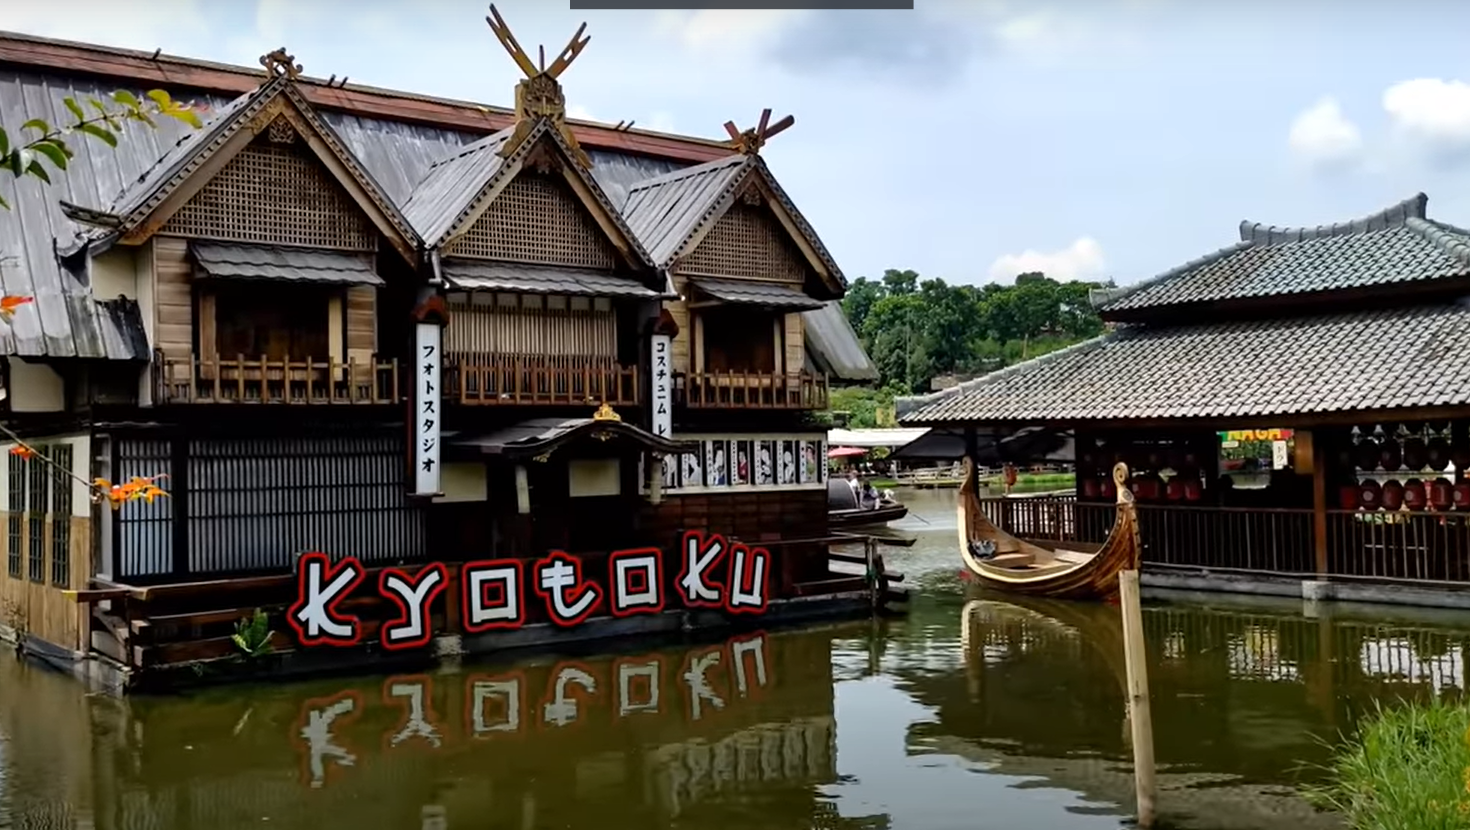 Floating Market Lembang Tempat Wisata di Bandung, Kuliner di Atas Perahu Mengapung